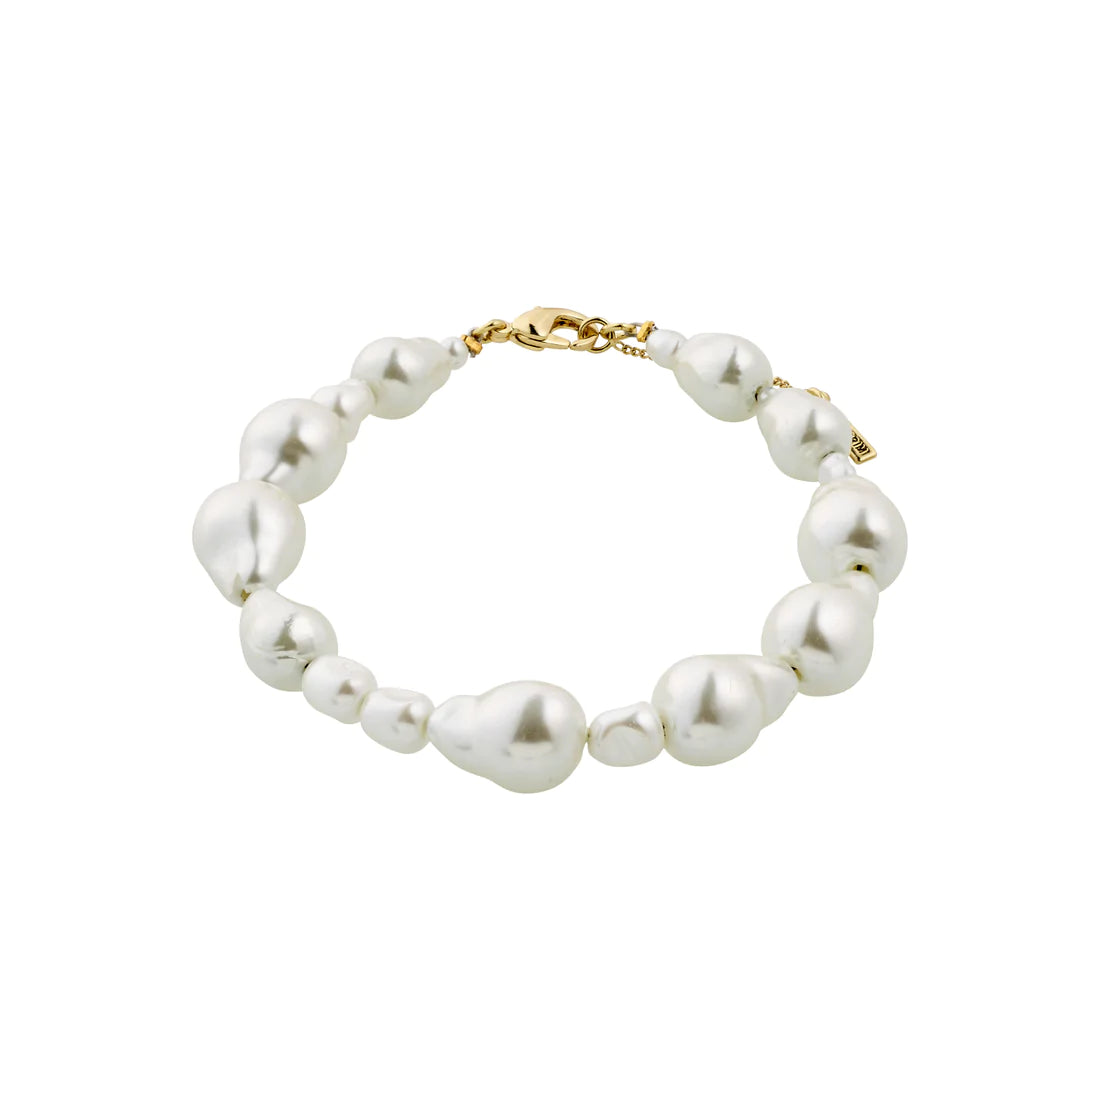 Willpower pearl bracelet